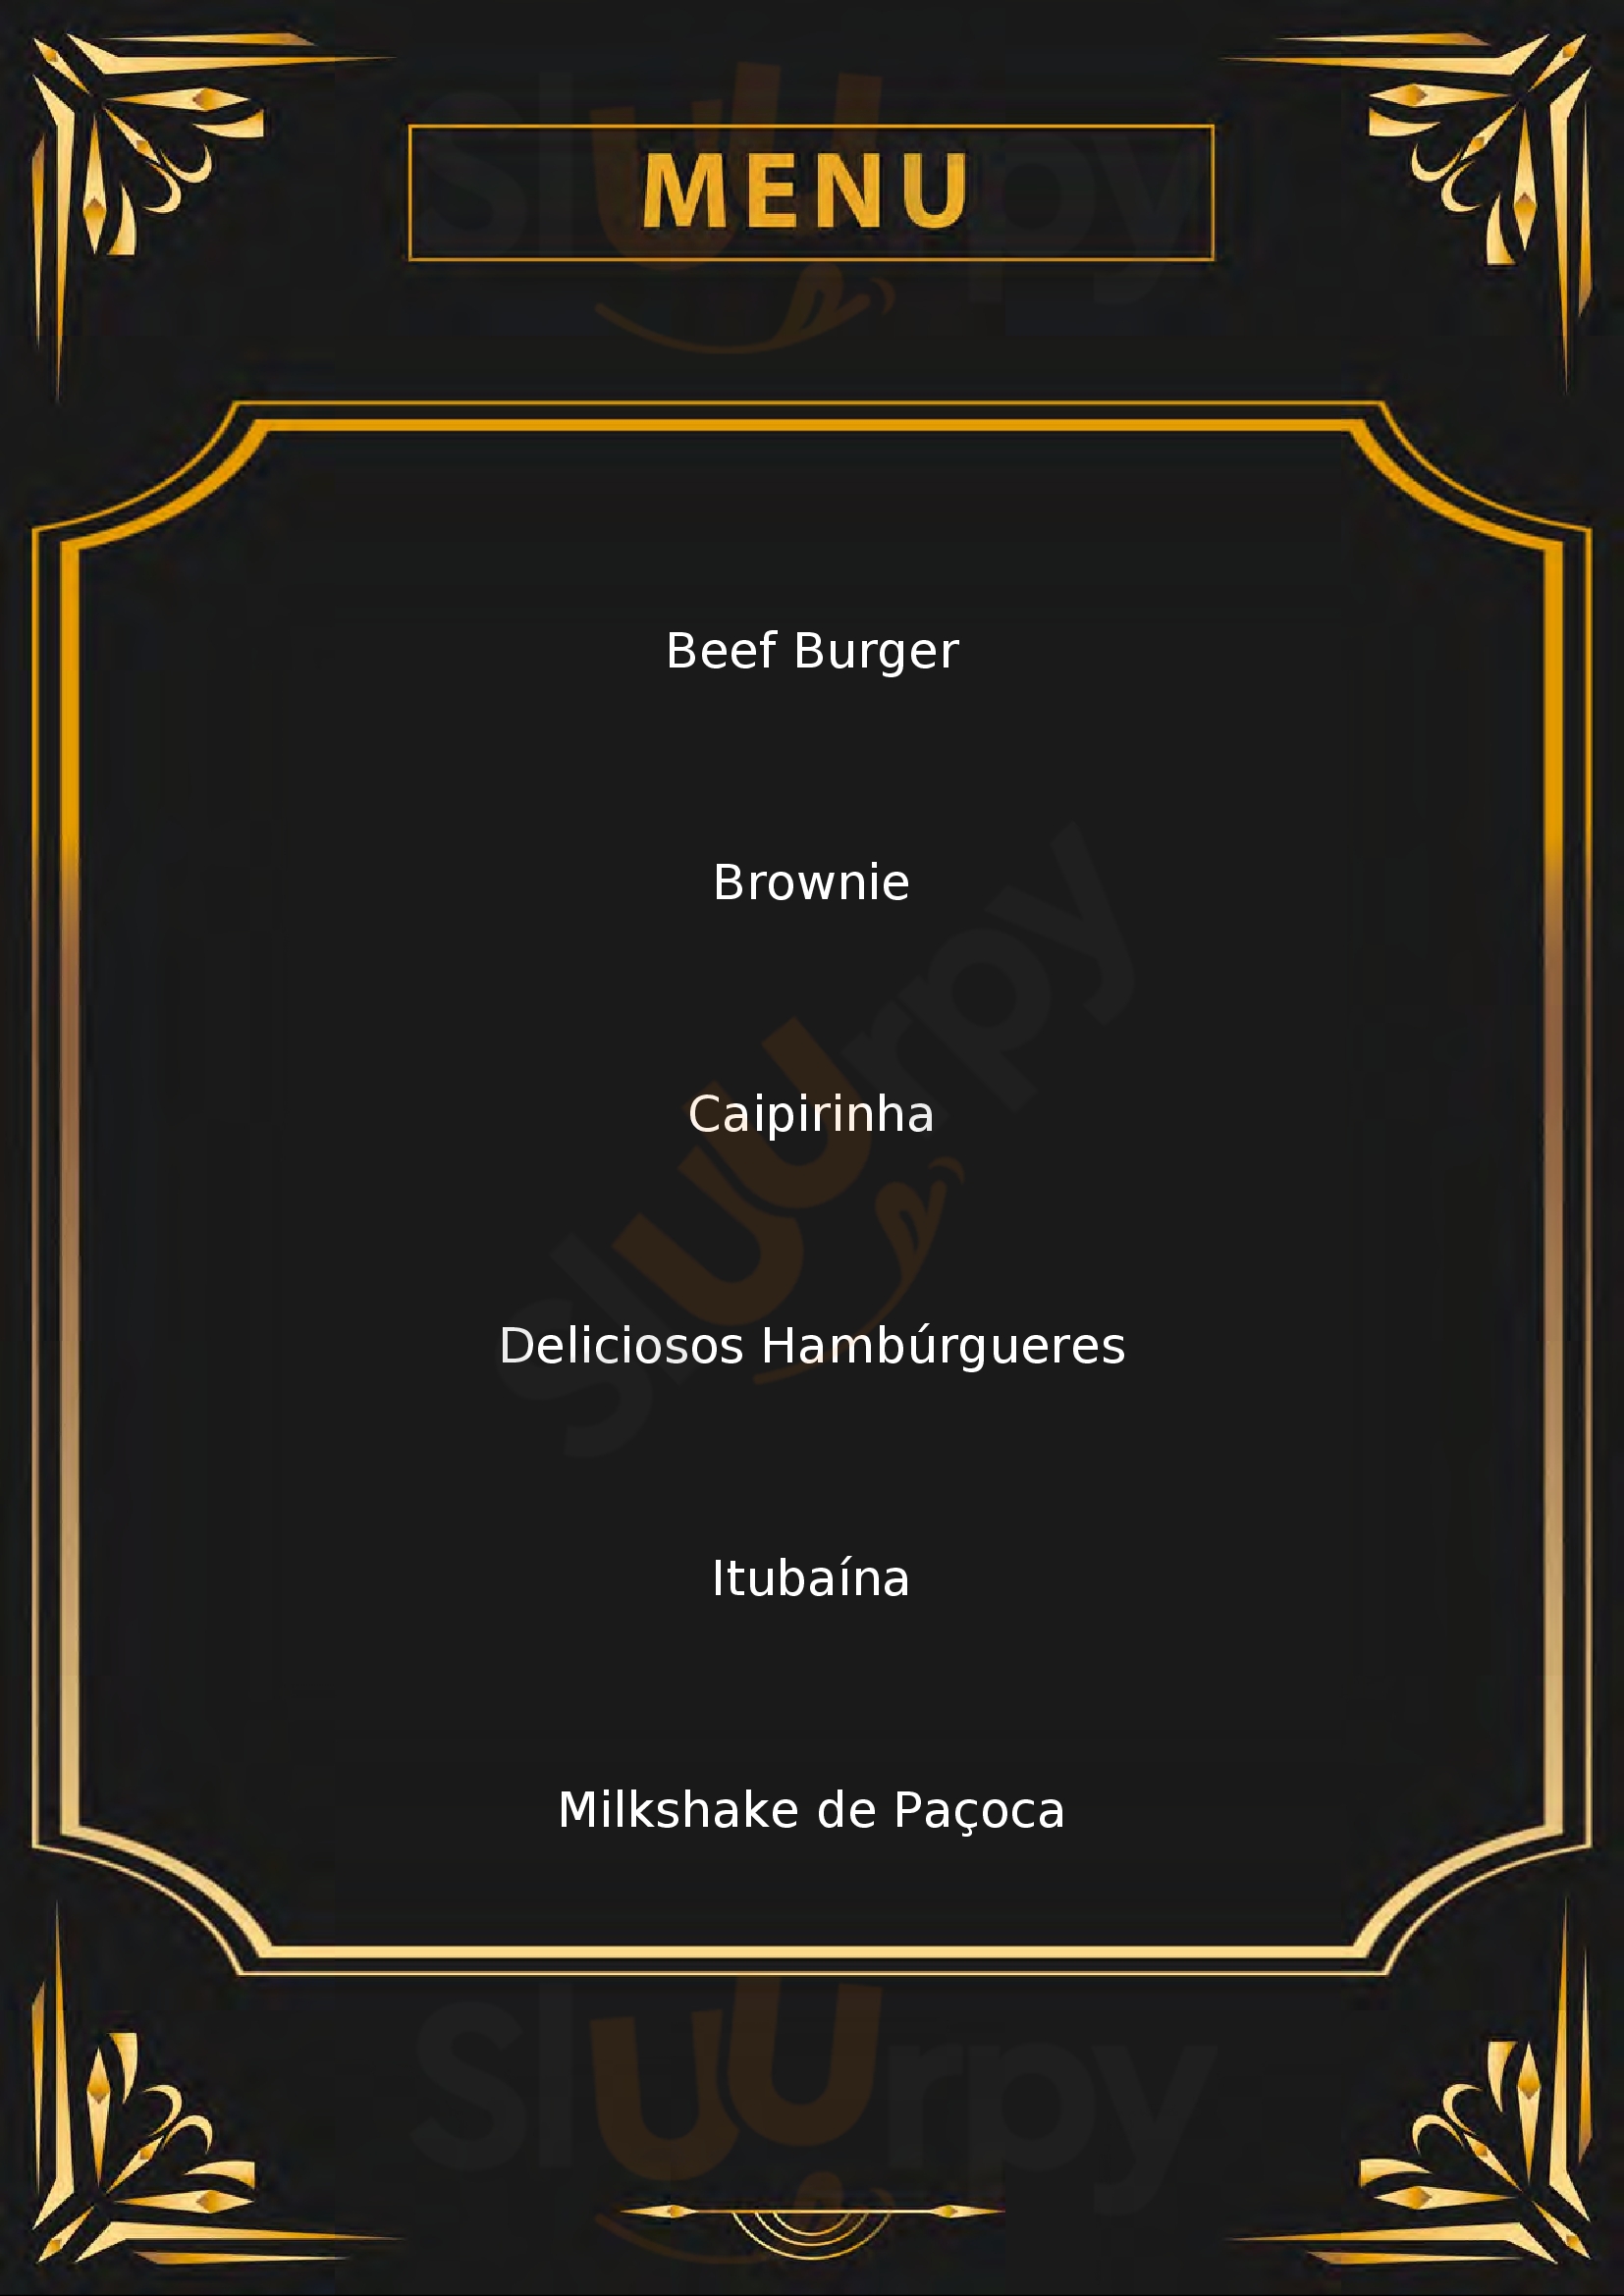 J's Fine Burger - Hamburgueria Artesanal Belo Horizonte Menu - 1